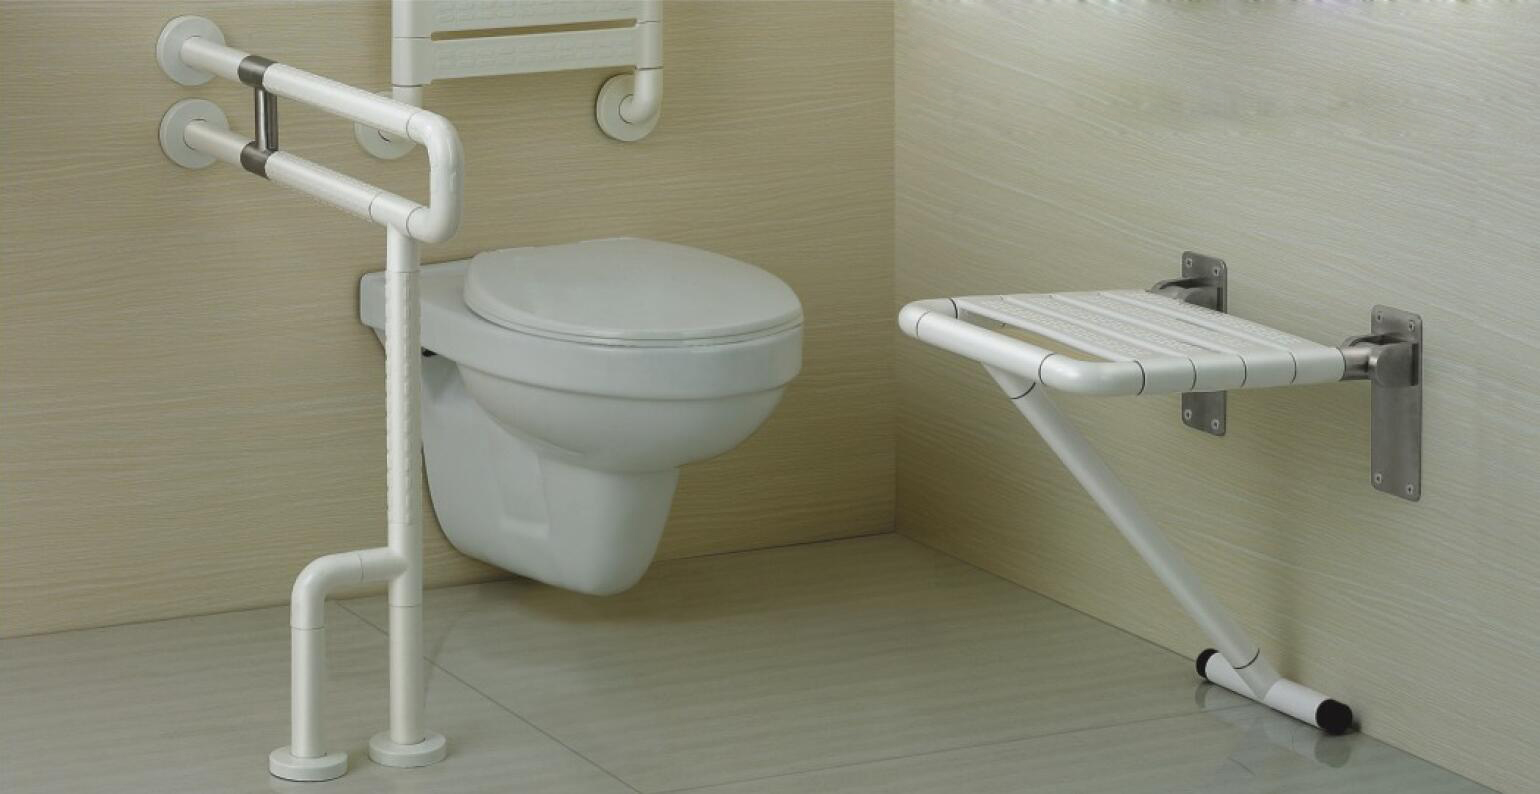 Quali sono le ragioni della popolarità dei WC sospesi?